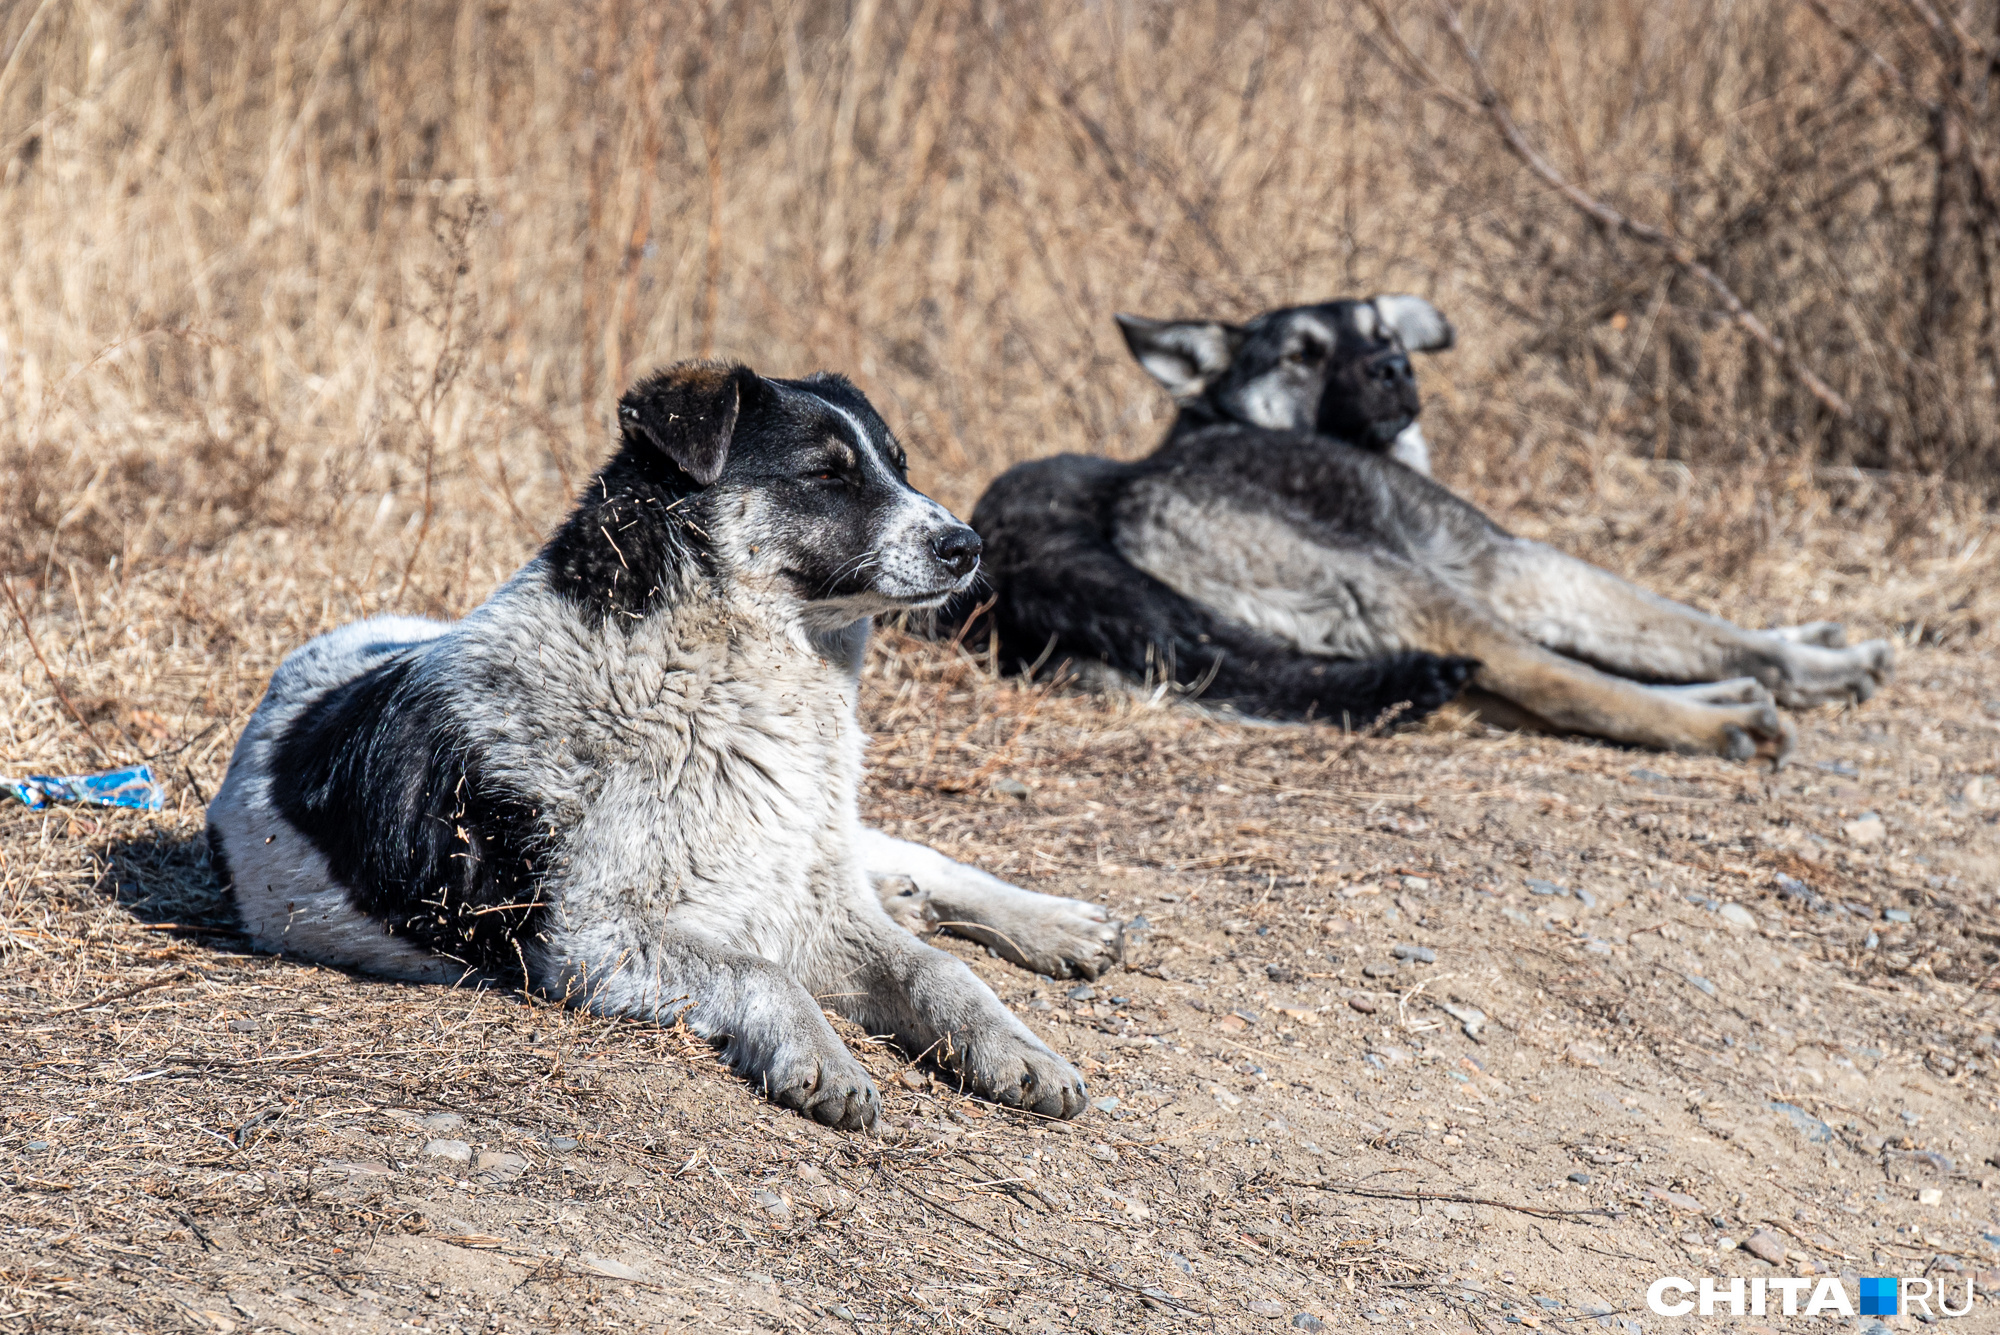 Волонтеры в Бурятии, где приняли закон об эвтаназии собак, эвакуируют животных в другие регионы